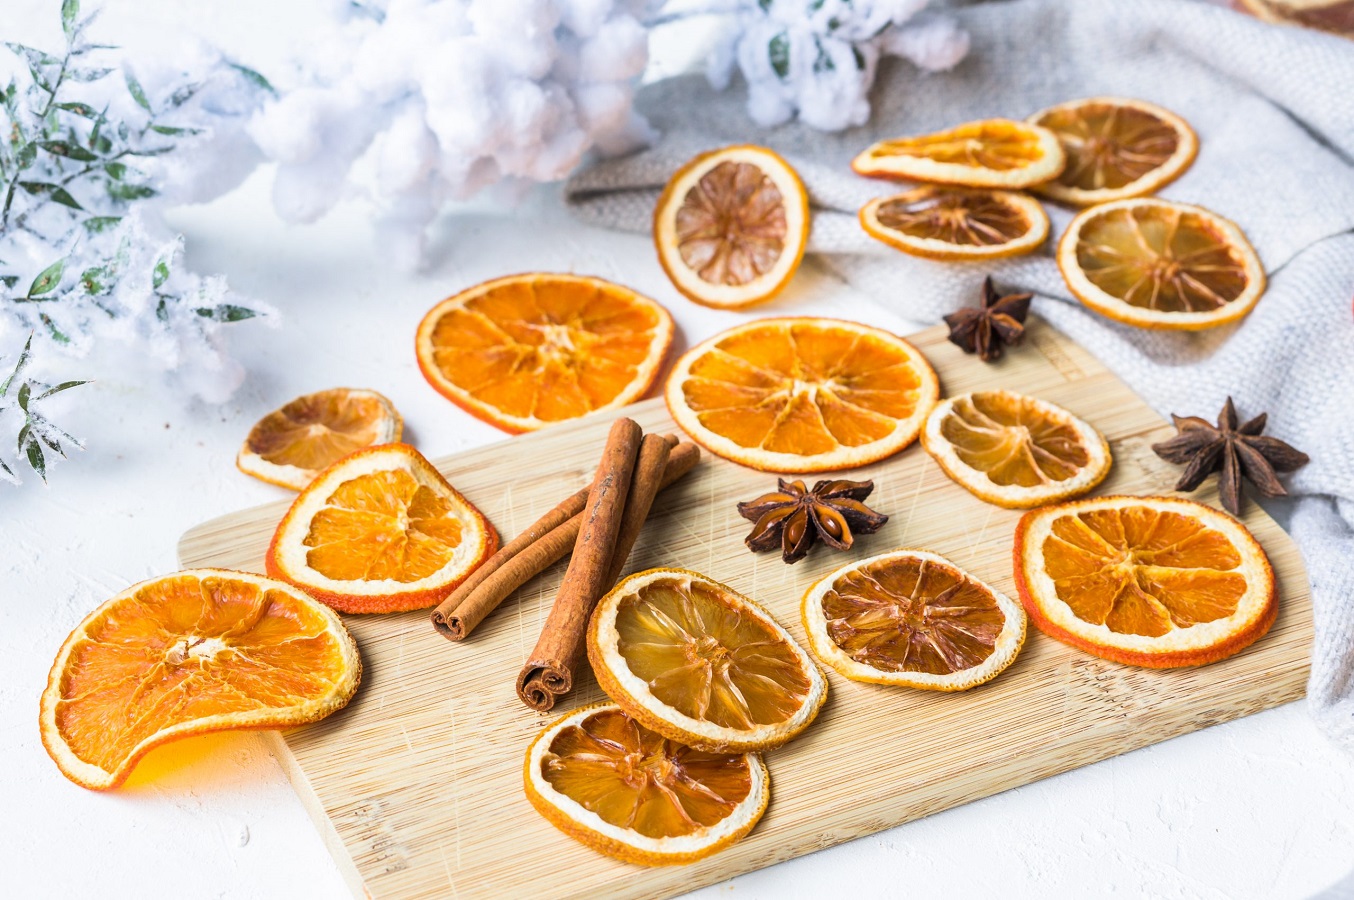 How to Dry Orange Slices - 3 Quick Ways to Dry Oranges